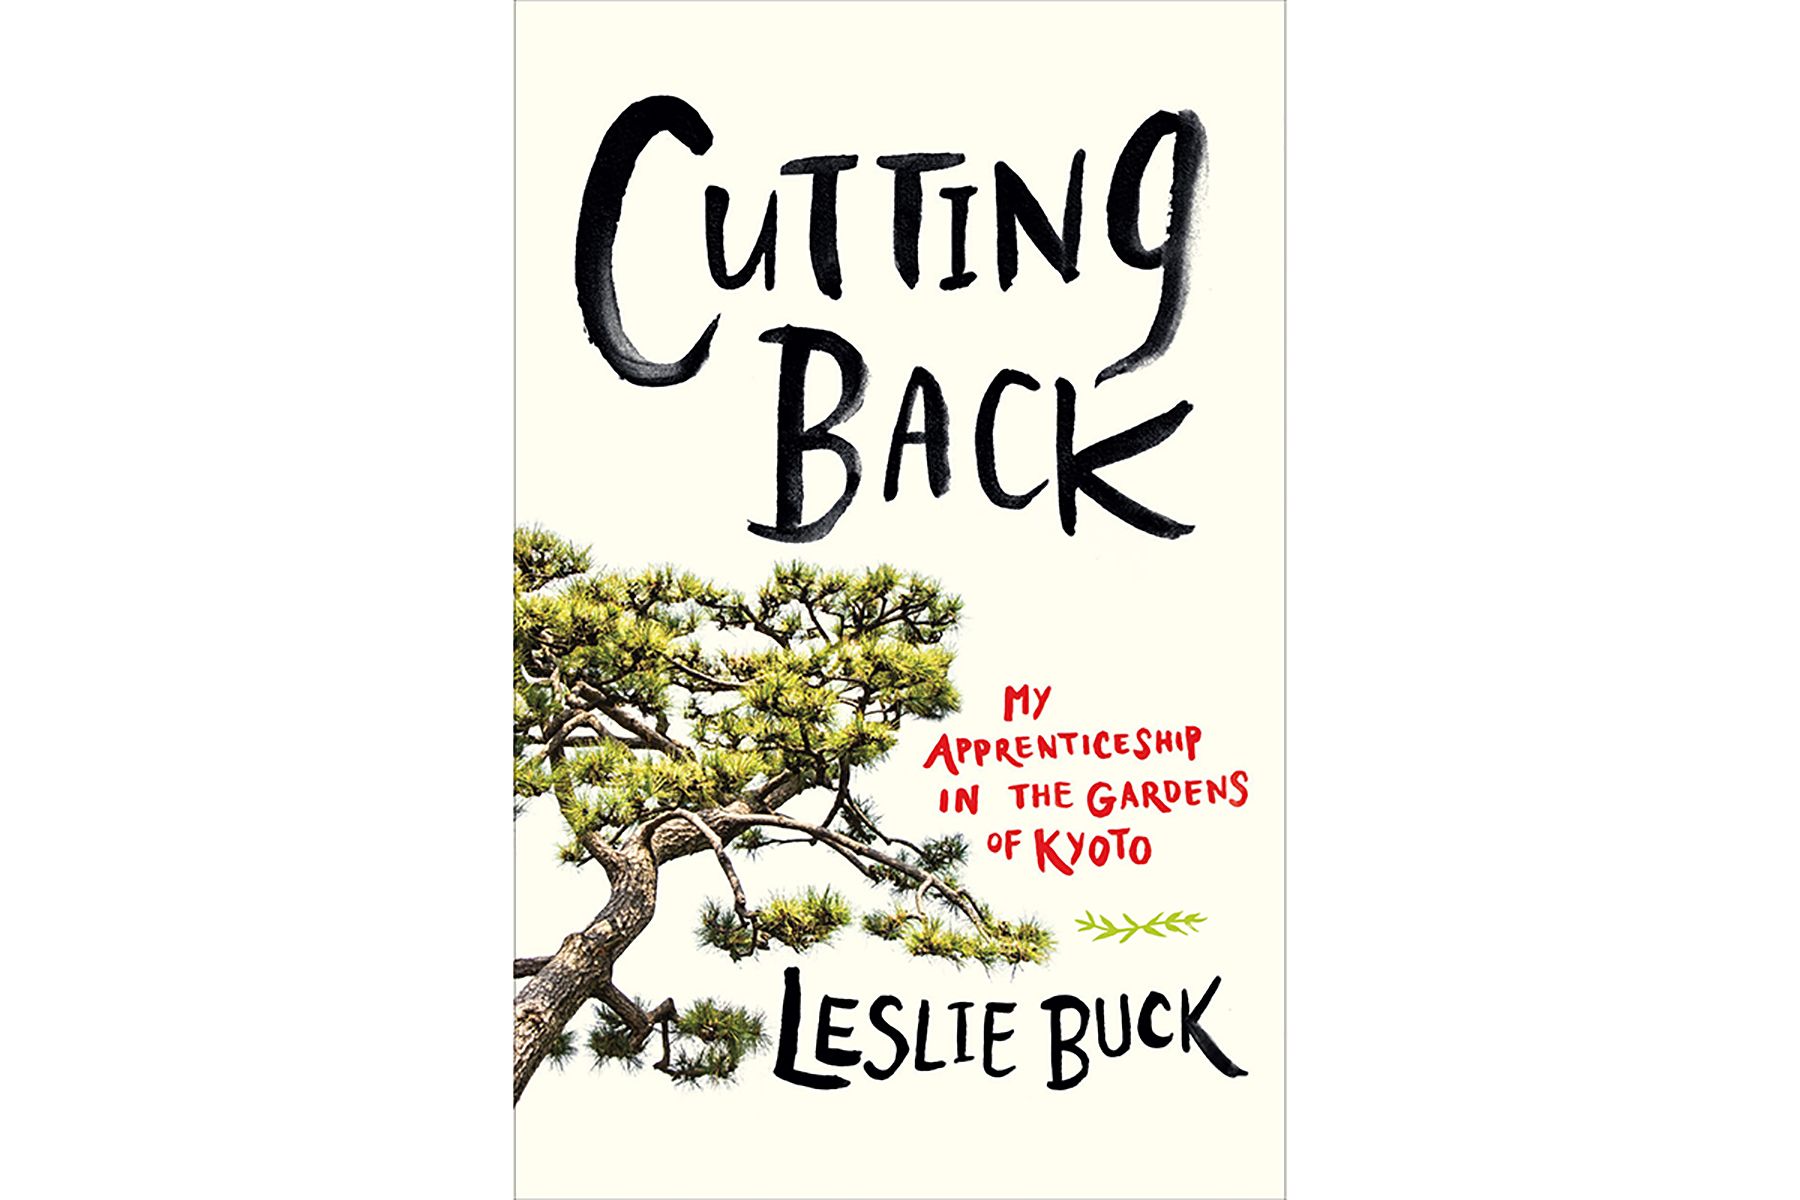 ปกของการตัดกลับ โดย Leslie Buck